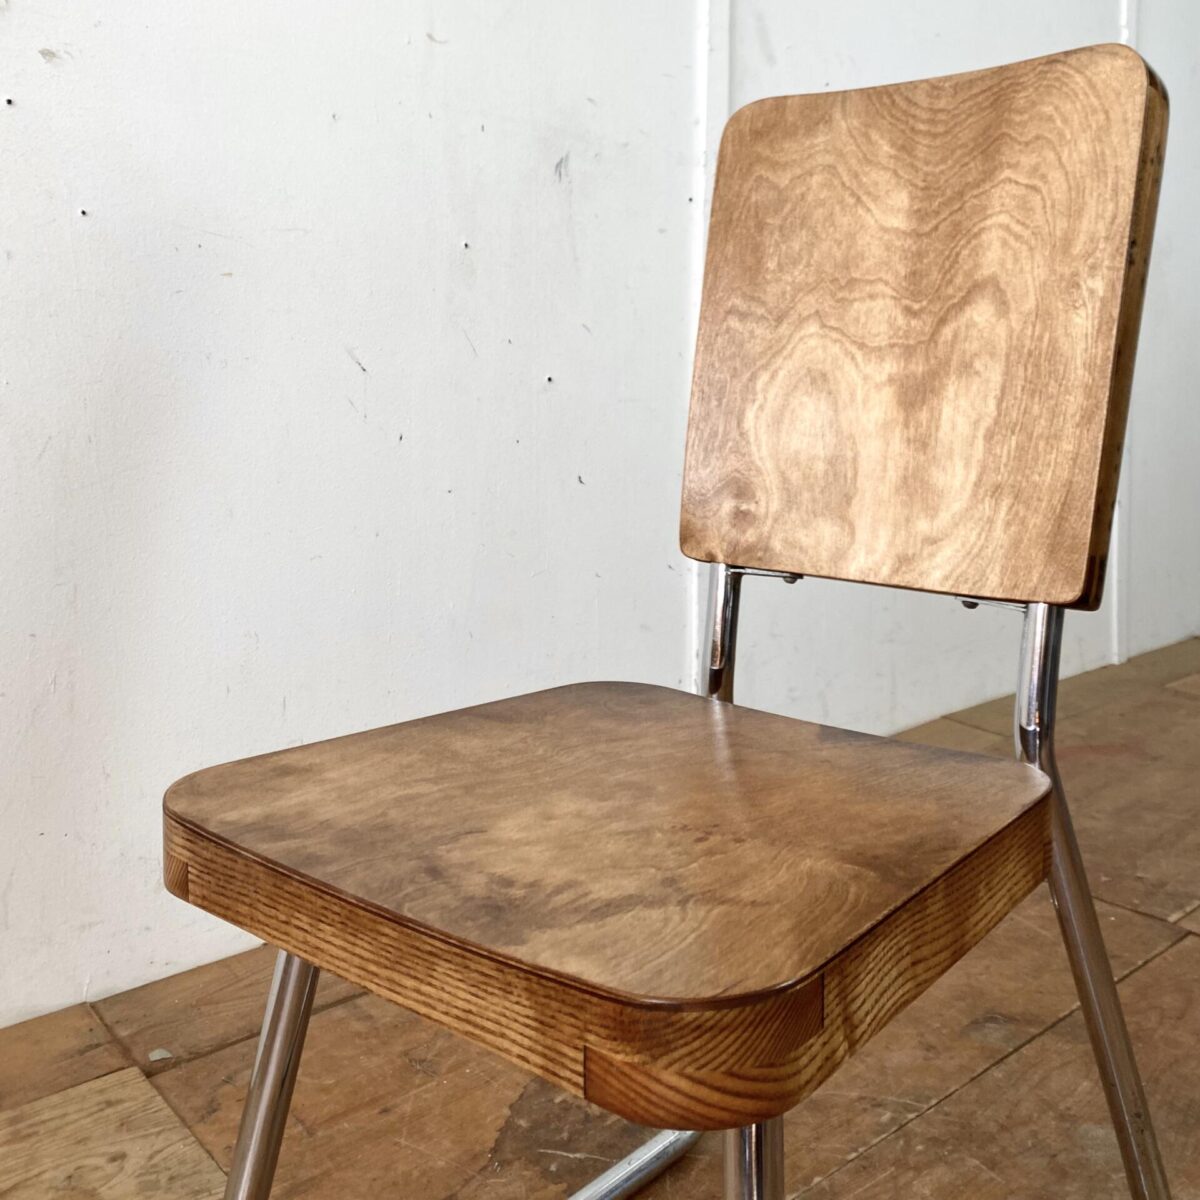 Deuxieme.shop Bauhaus Sessel Wassily Chair. Verchromter Stahlrohr Stuhl, Sitz und Lehne aus Esche Vollholz mit Birkensperrholz belegt. 56cm tief 40cm breit, Sitzhöhe 42.5cm Gesamthöhe 86cm. Der Stuhl hat eine leichte Flexibilität da Sitz und Lehne nicht miteinander verbunden sind. Rückenlehne und Sitzfläche sind etwas rund, formverleimt. Das verchromte Stahlrohrgestell ist etwas abgegriffen, die Holz Elemente mit Patina und leichter Glanz Oberfläche. 